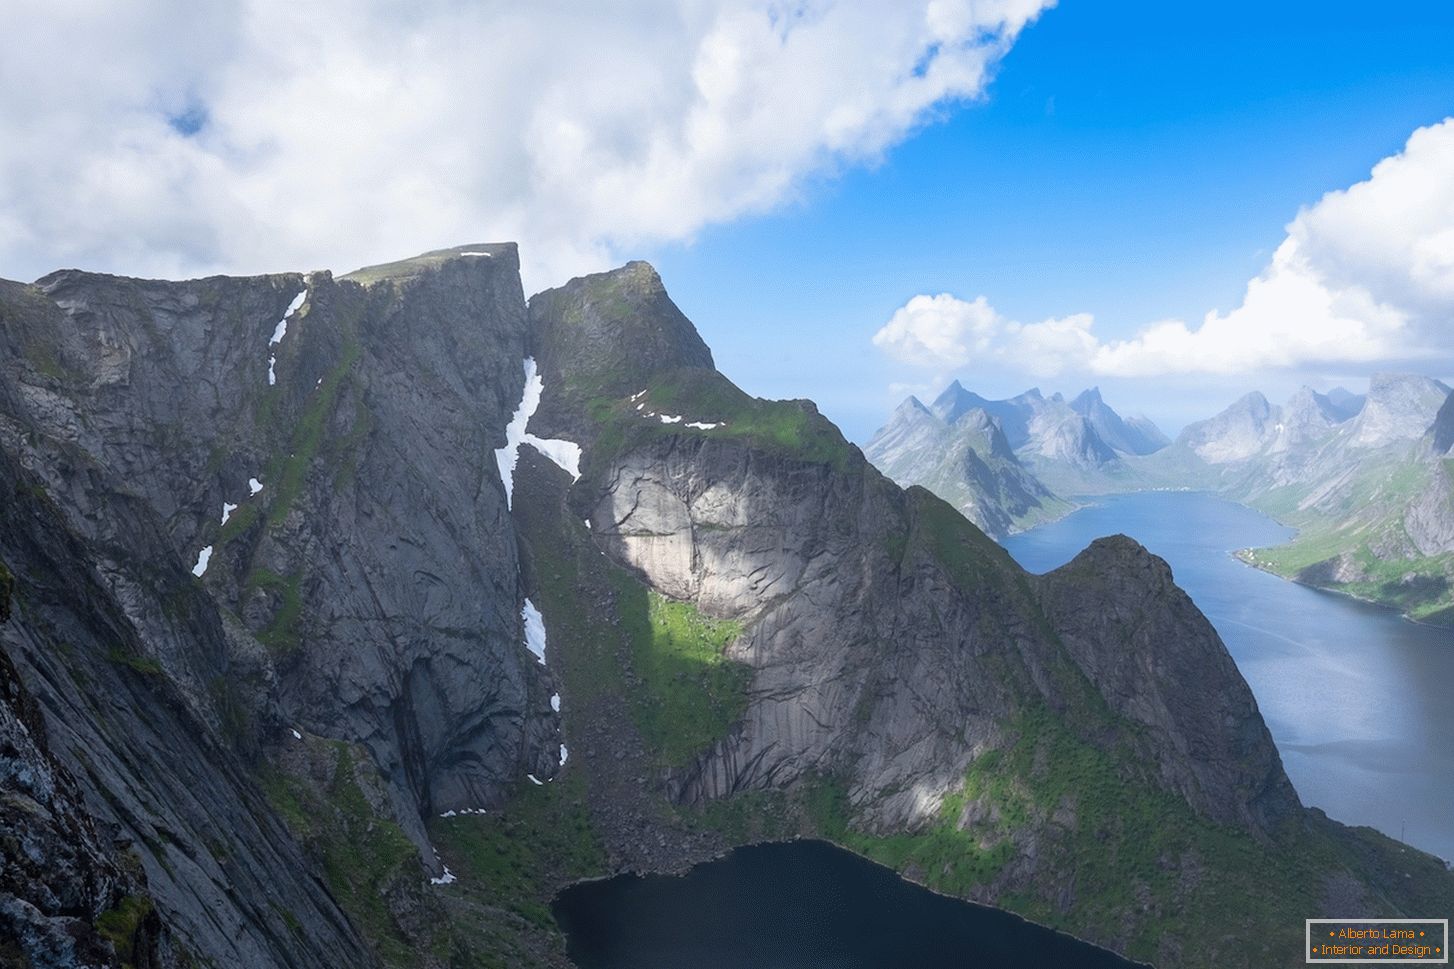 Незабравима гледка от птичи поглед към планините на Норвегия